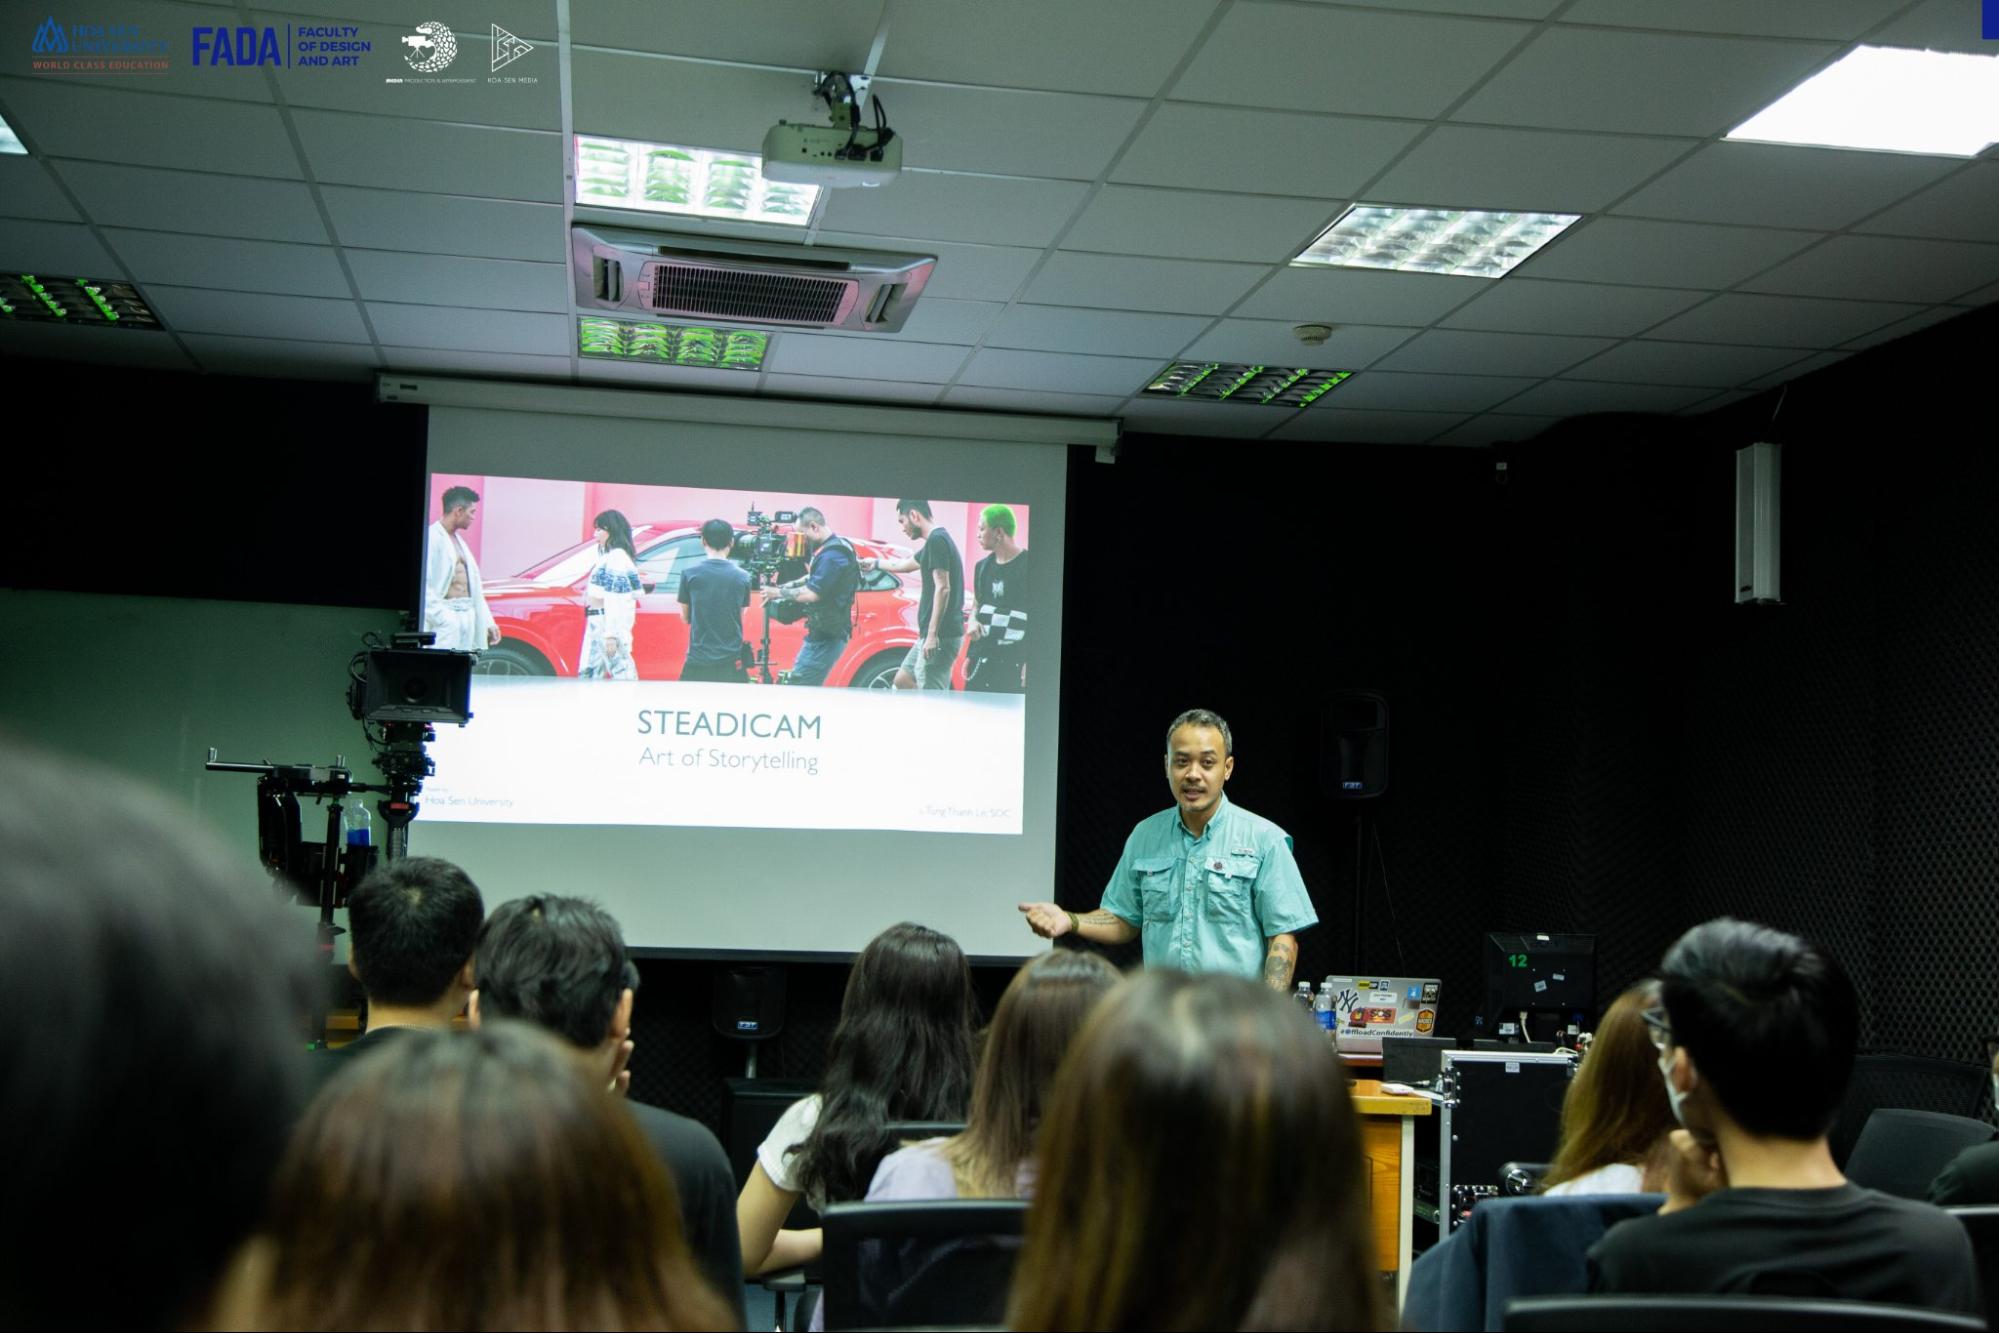 Đại học Hoa Sen là trường đào tạo ngành quản trị công nghệ truyền thông hàng đầu nước ta